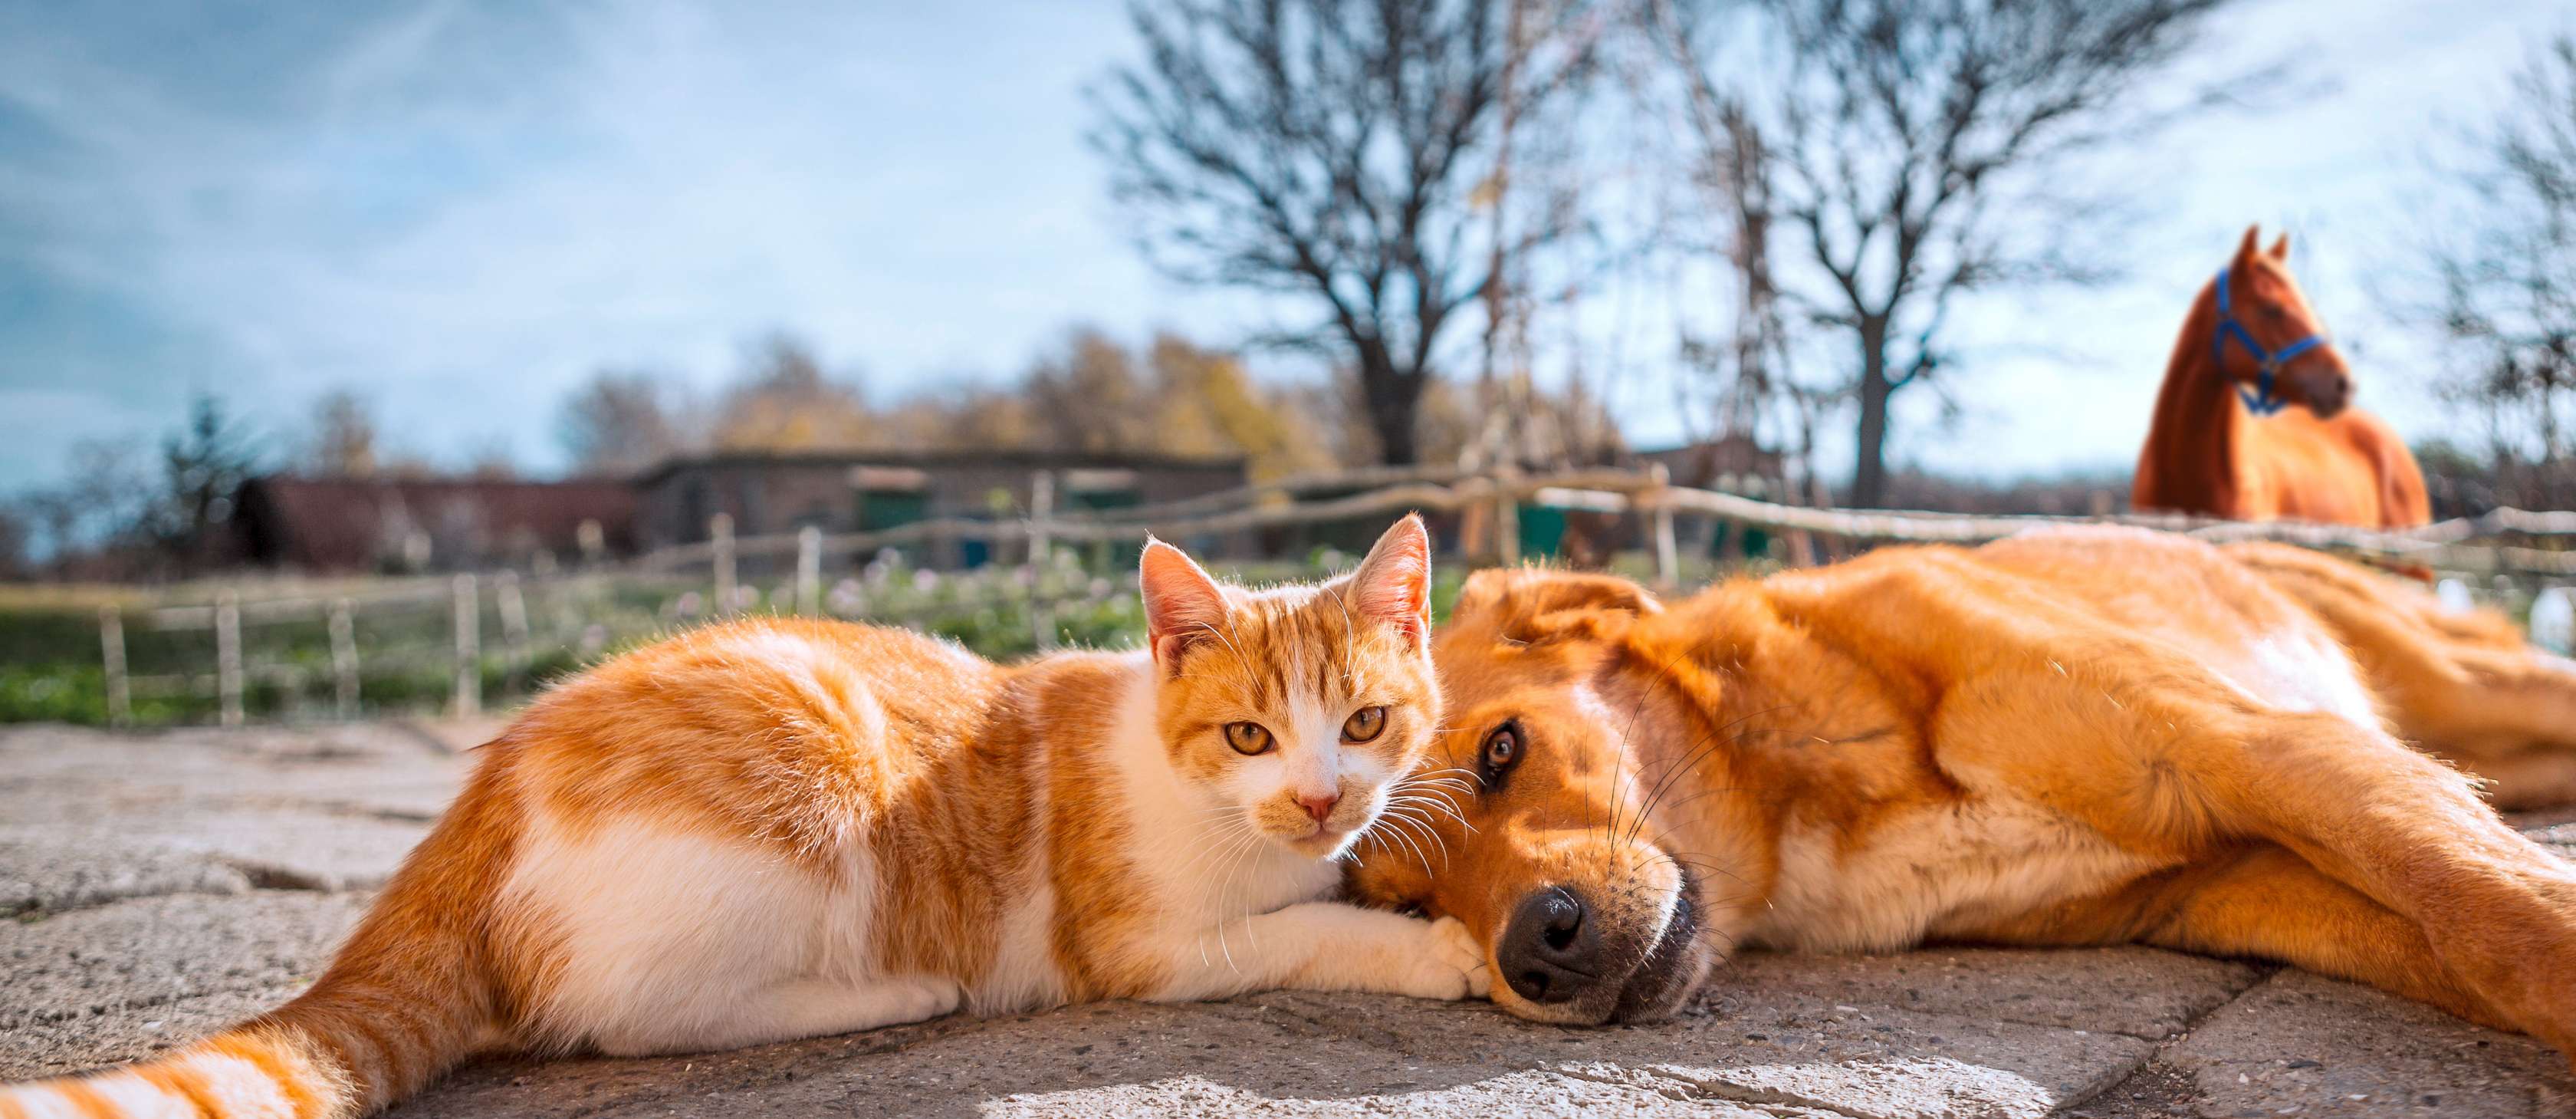 Allianz Tierkrankenversicherung: Ein Hund und eine Katze liegen nebeneinander auf dem Boden